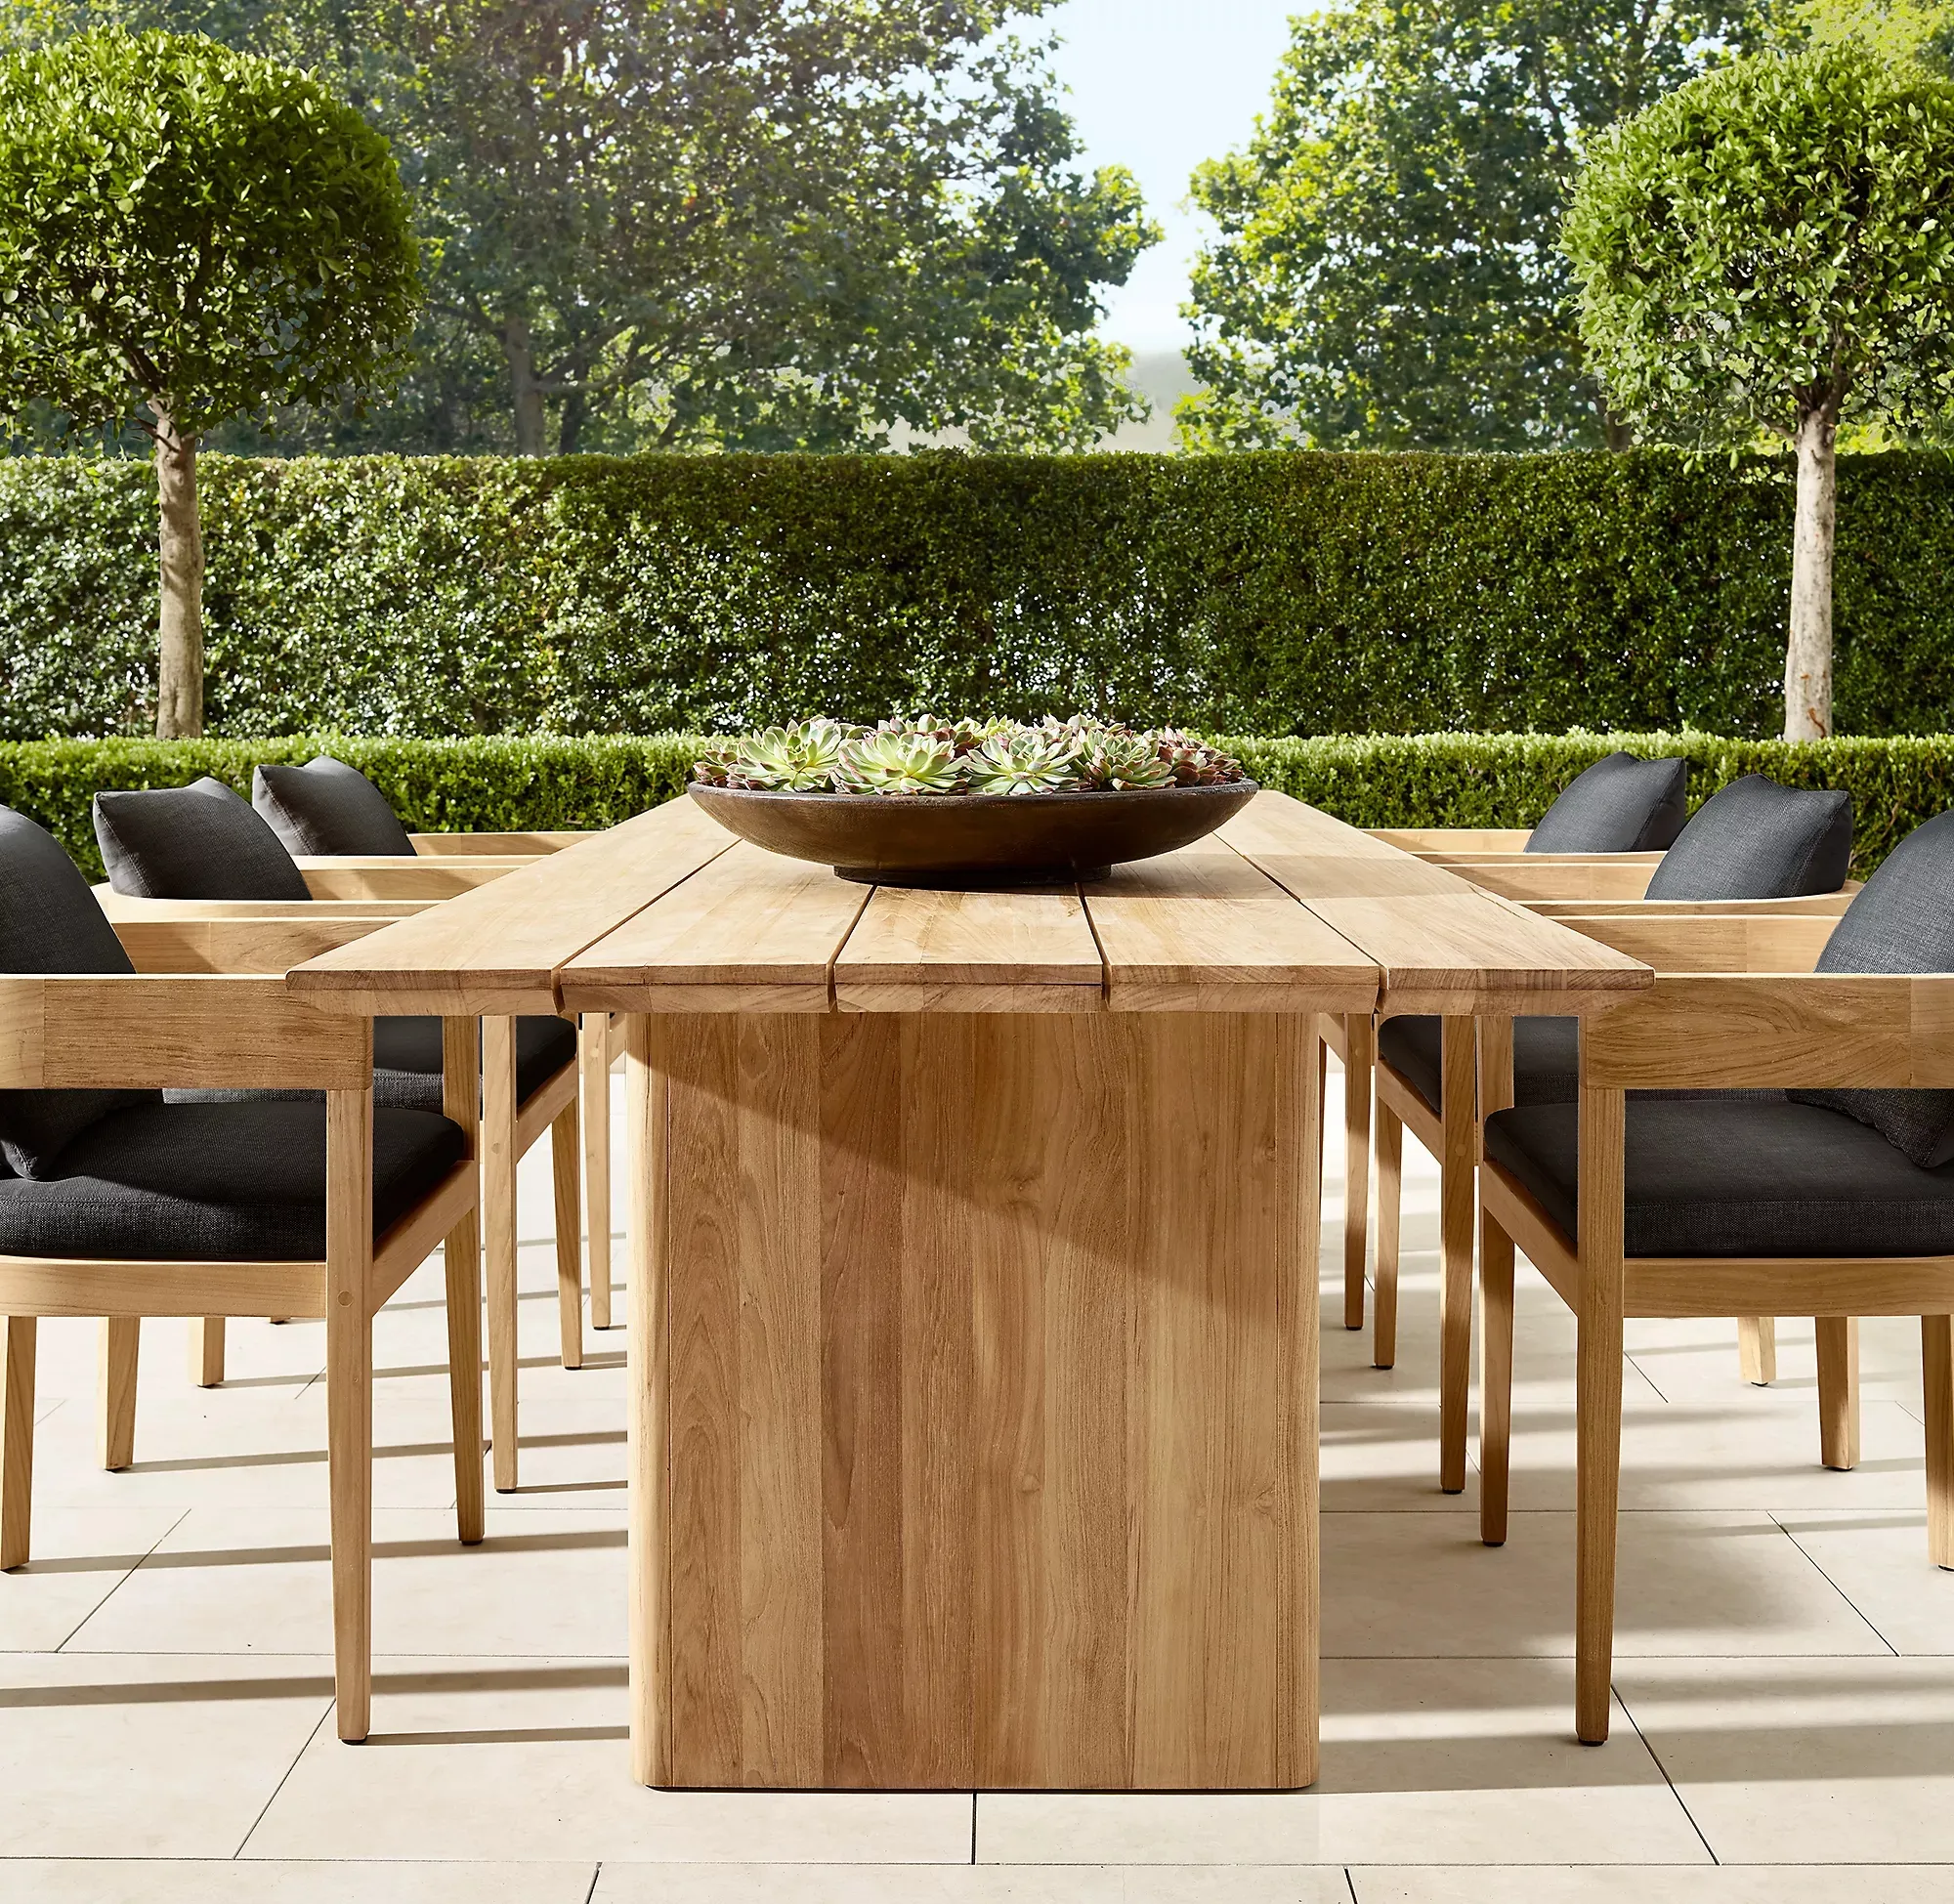 Vendita calda giardino cortile Teak tavolo da pranzo Villa all'aperto Hotel terrazza tavolo e sedia Set